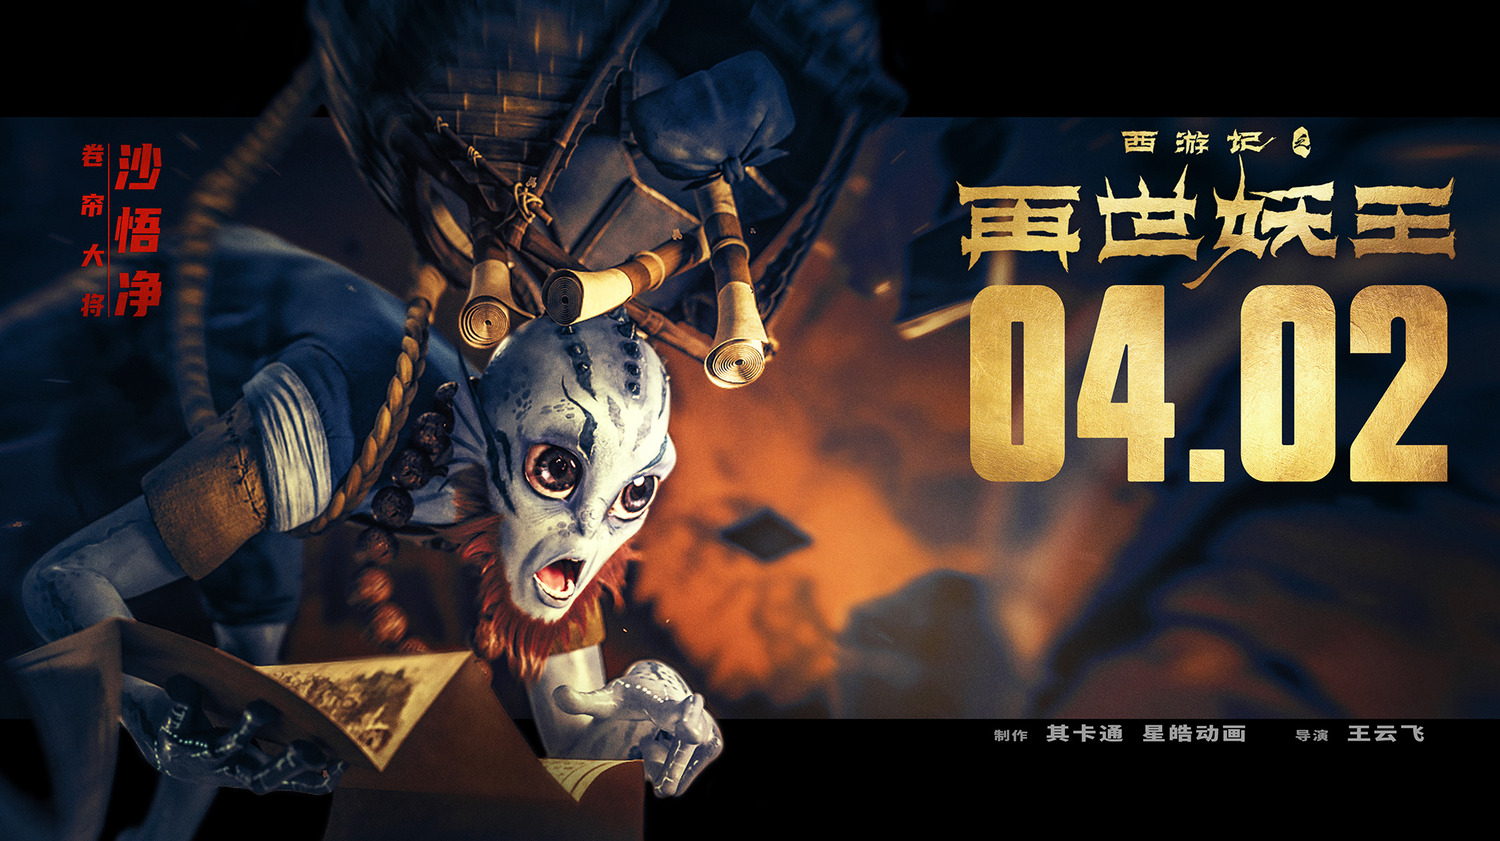 Extra Large Movie Poster Image for Xi You Ji Zhi Zai Shi Yao Wang (#13 of 21)